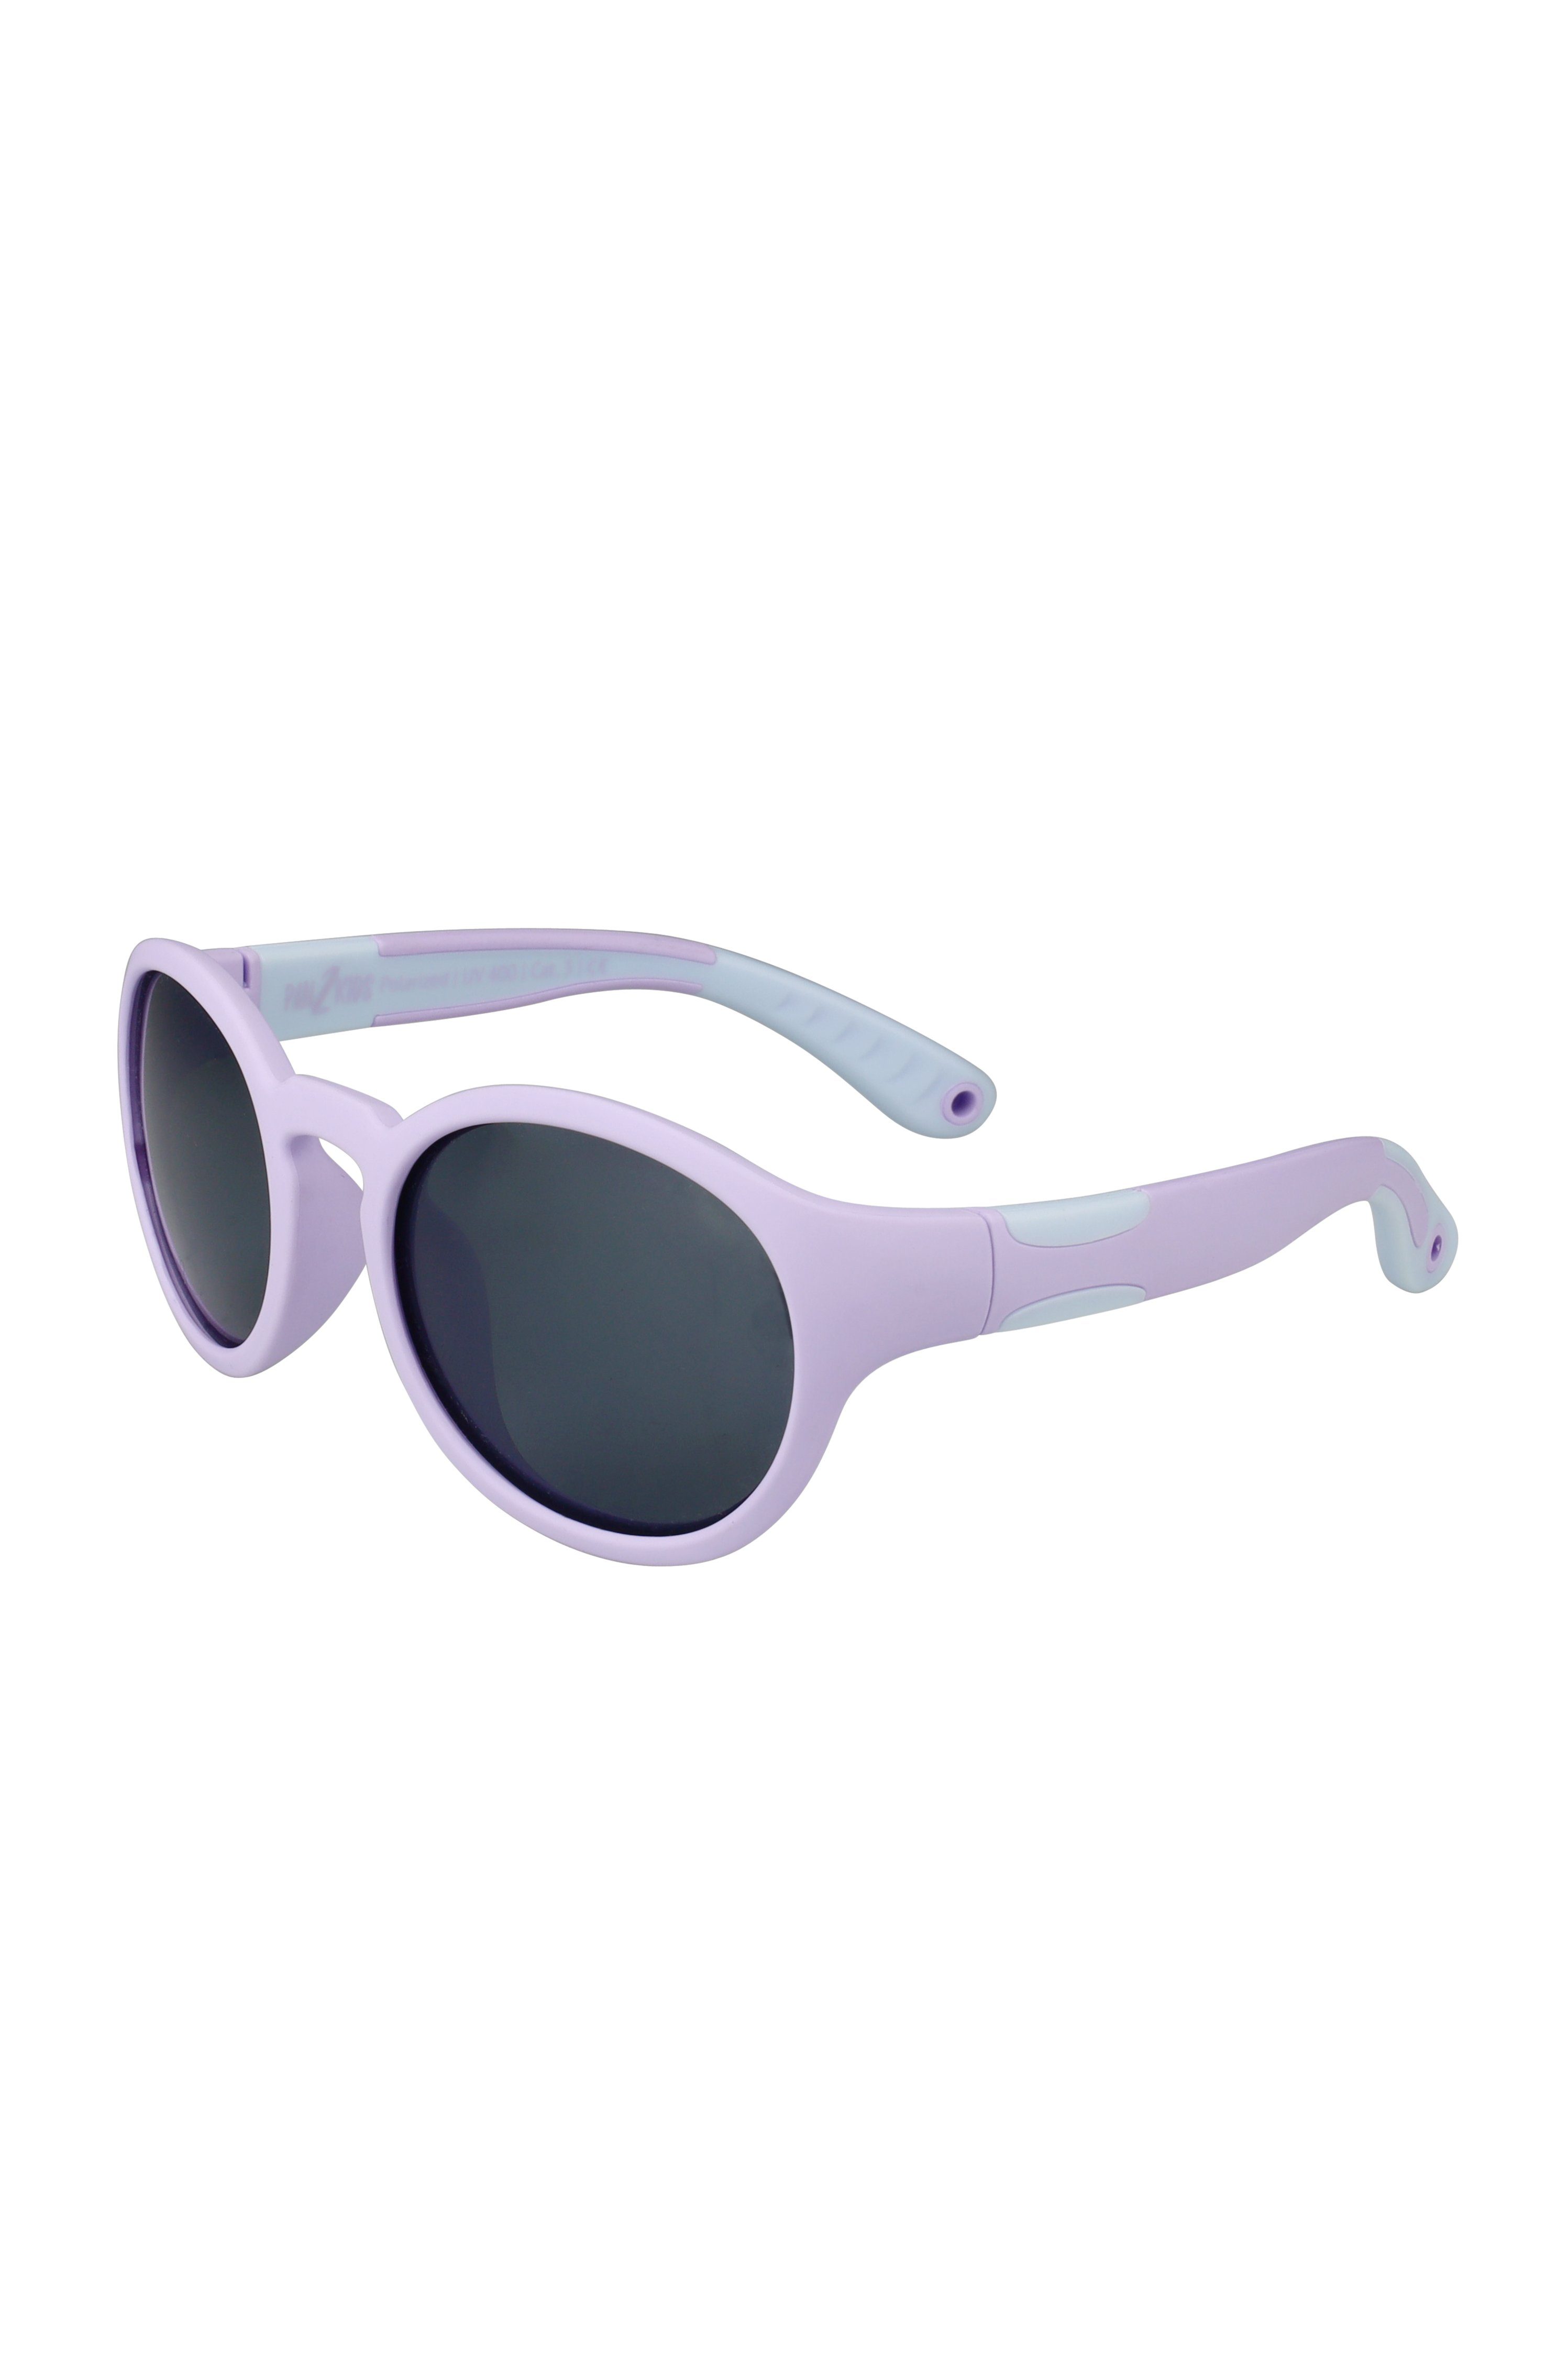 ActiveSol SUNGLASSES Sonnenbrille für Kinder - Pan2Kids, Panto Design, 2 – 5 Jahre, polarisiert Digital Lavender